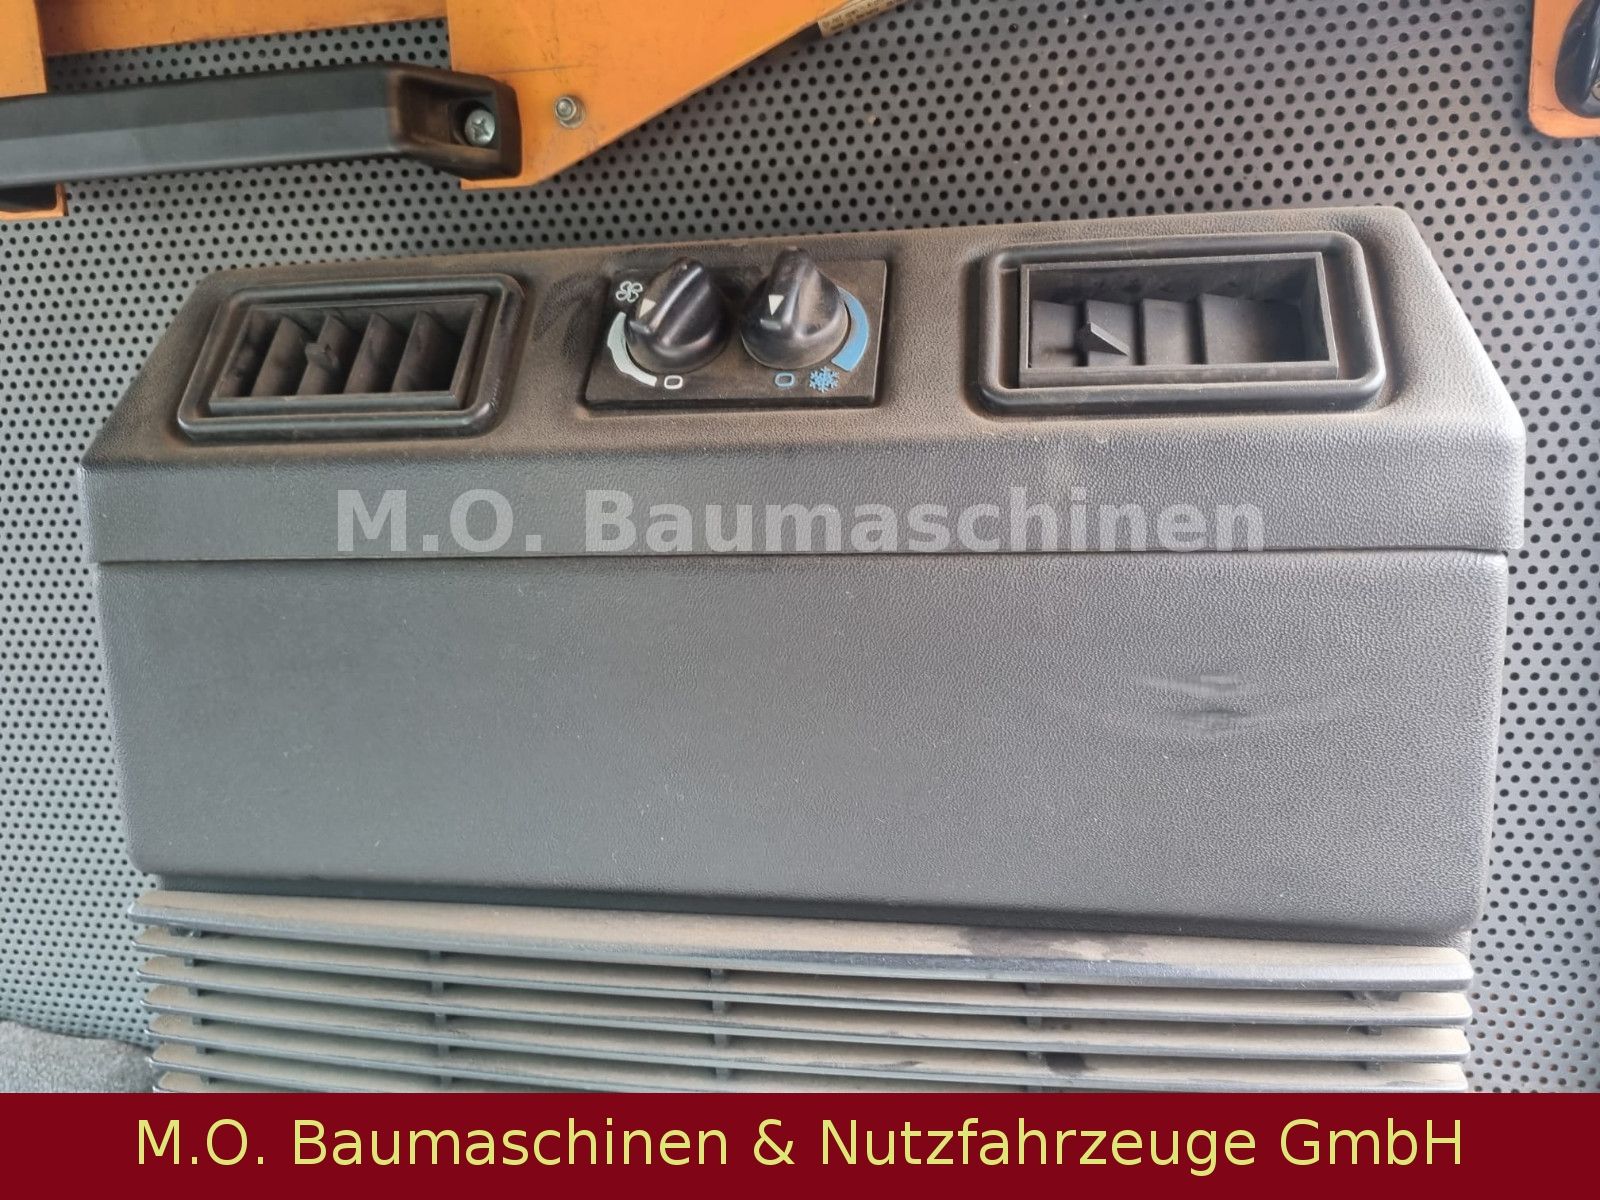 Fahrzeugabbildung Schmidt AEBI Bougie MFH 2200 / Kehrmaschine /